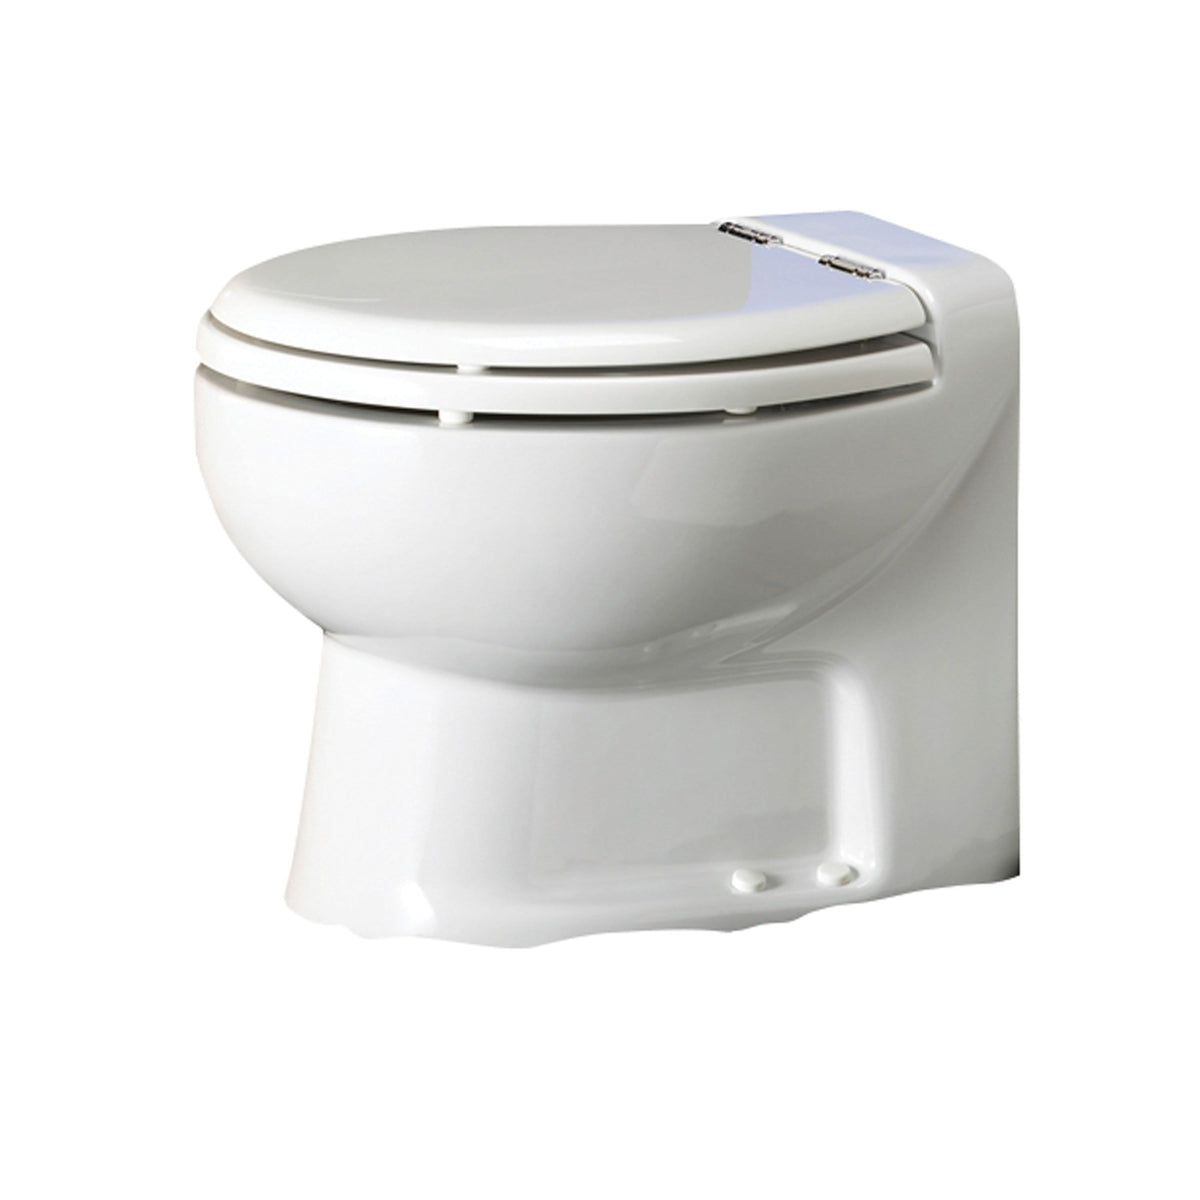 Thetford Not Qualified for Free Shipping Thetford Tecma Silence 1 Mode 12v RV Toilet White #38026